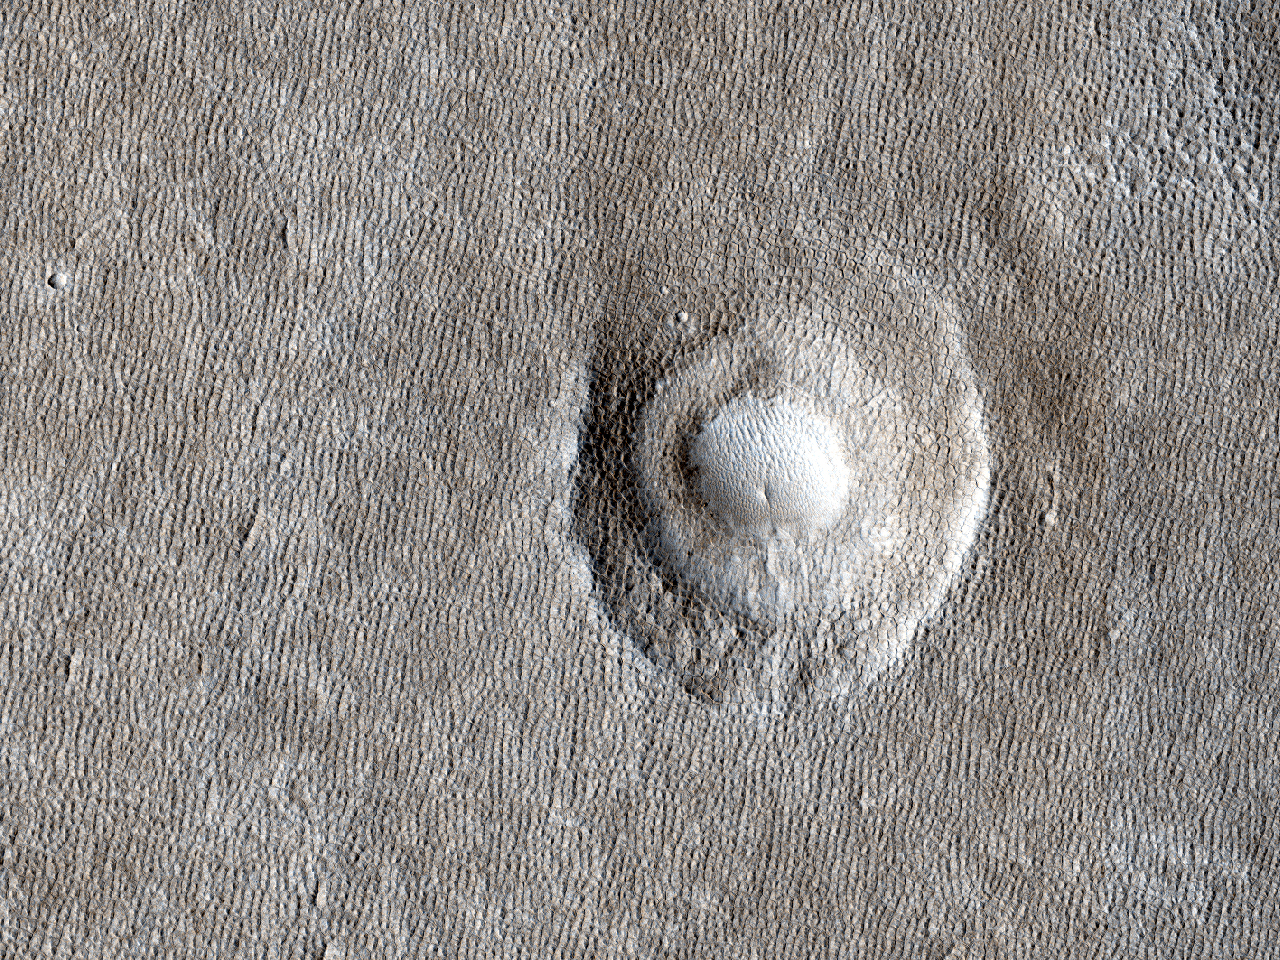 Κλιμακωτός Κρατήρας Πολλών Επιπέδων στην Πεδιάδα της Αρκαδίας (Arcadia Planitia)